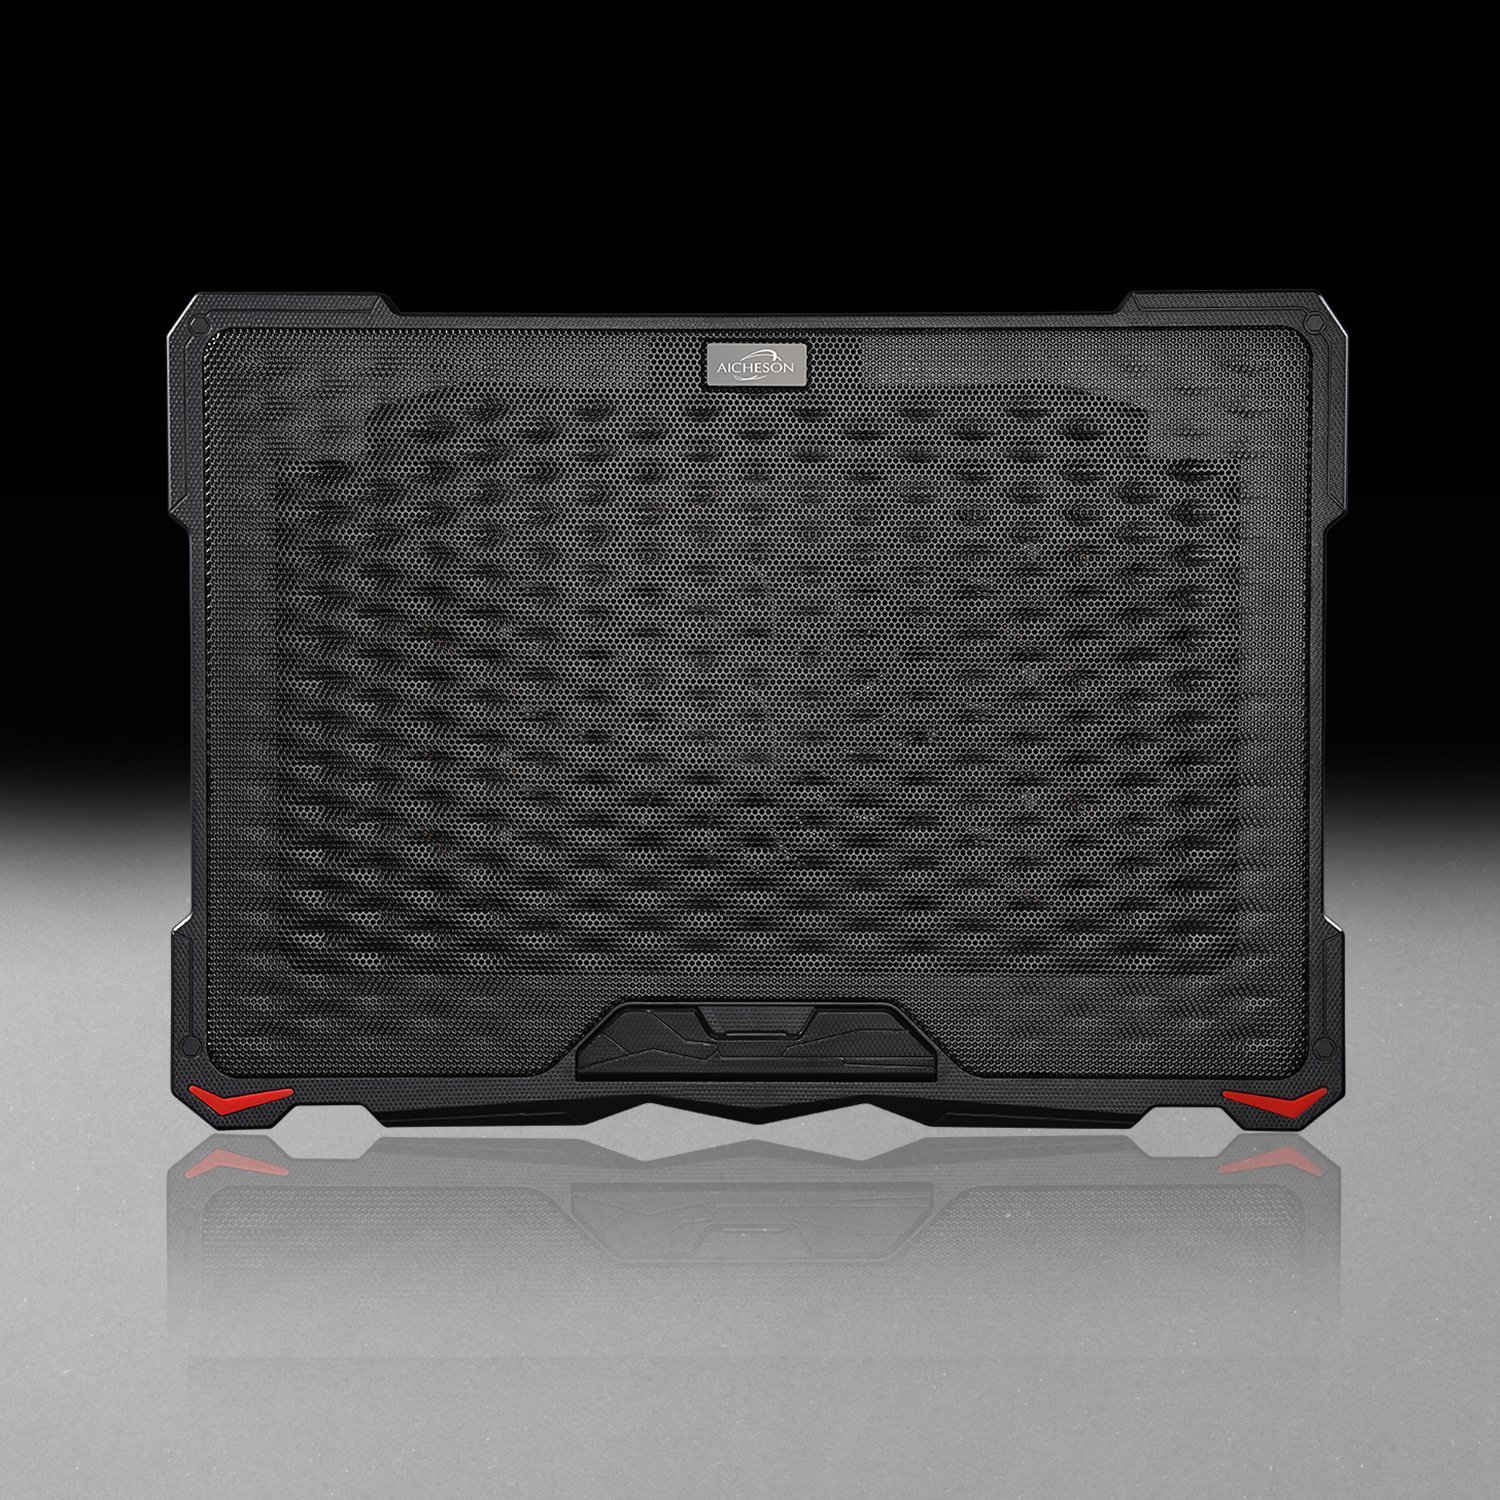 خرید و قیمت AICHESON Laptop Cooling Pad for 15.6 to 17 Inch Laptops,  Compatible with Lapdesk and Desk Use, Red Lights, 7 Ergonomic Stands